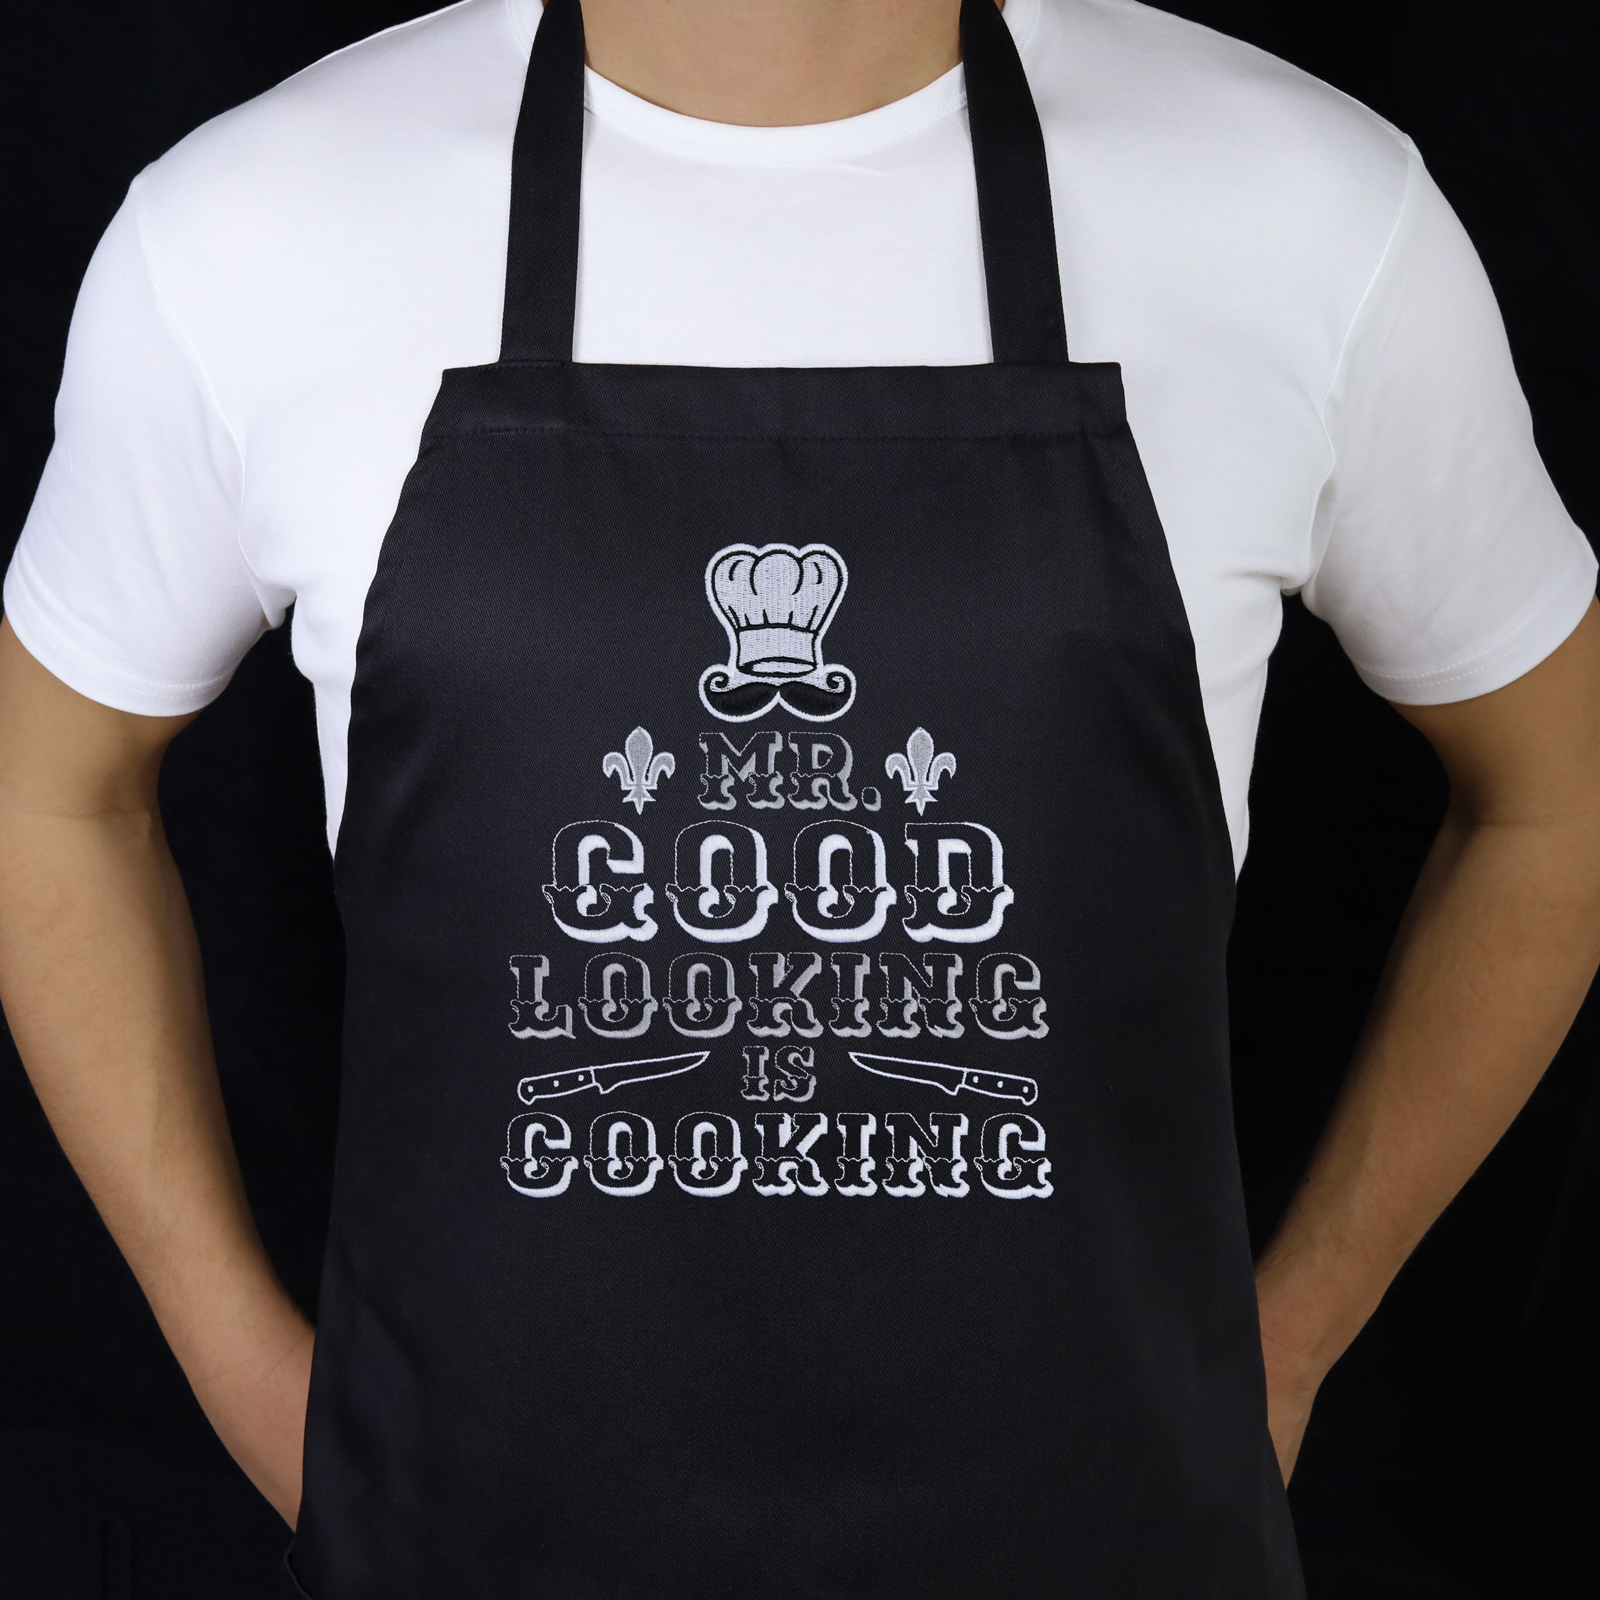 Mr. Good Looking is cooking - Kochschürze